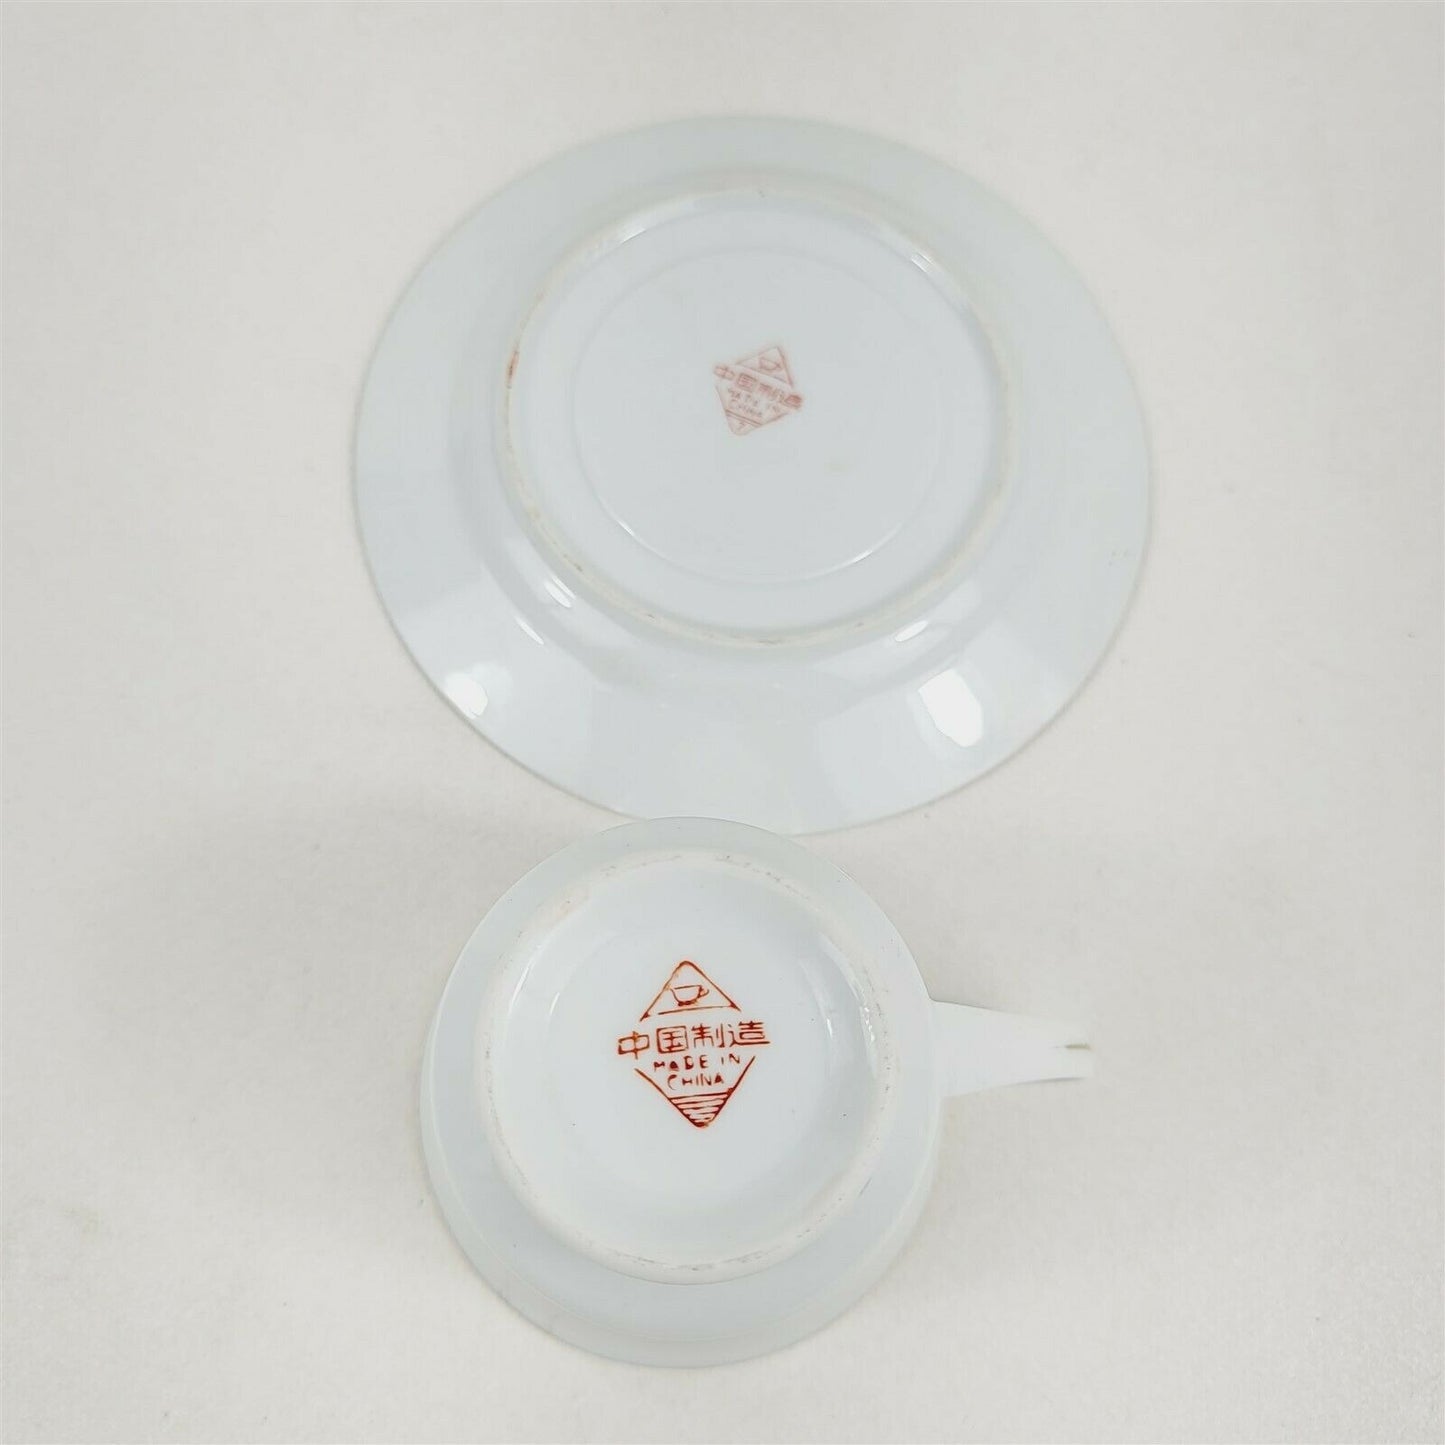 3 Vintage China Tea Cups & Saucers Pink Rose Floral Gold Trim